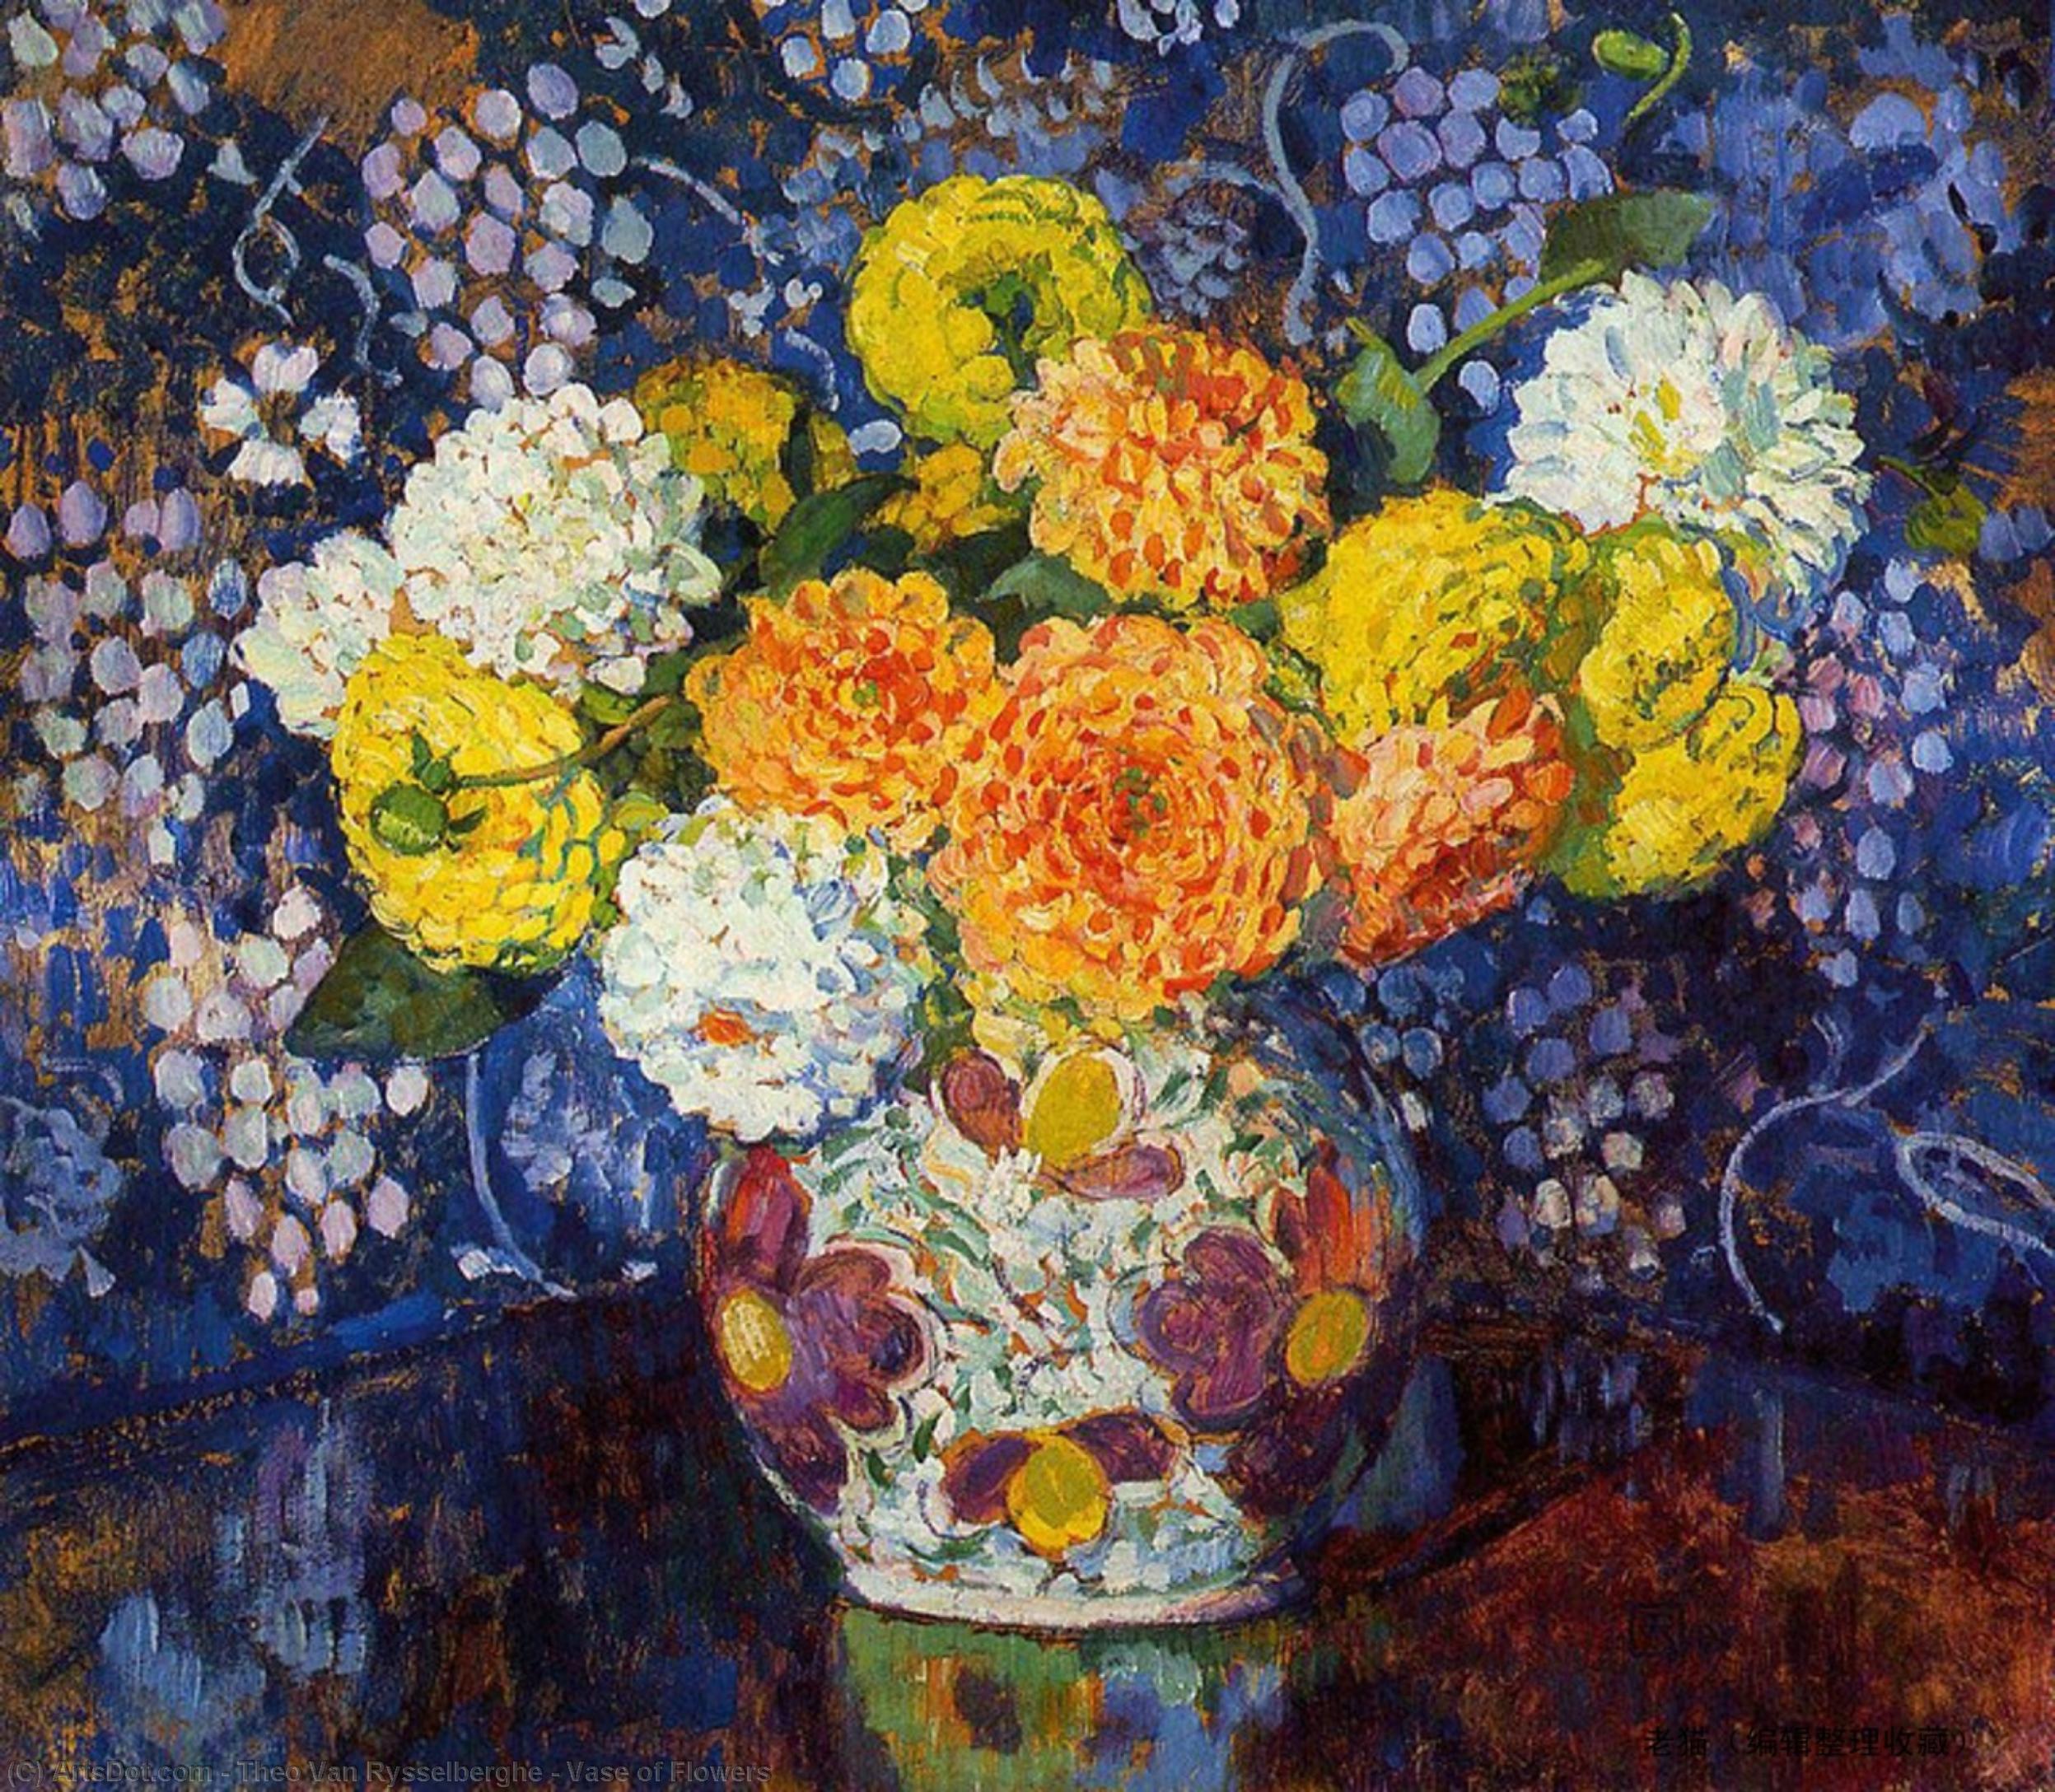 WikiOO.org - Encyclopedia of Fine Arts - Maleri, Artwork Theo Van Rysselberghe - Vase of Flowers